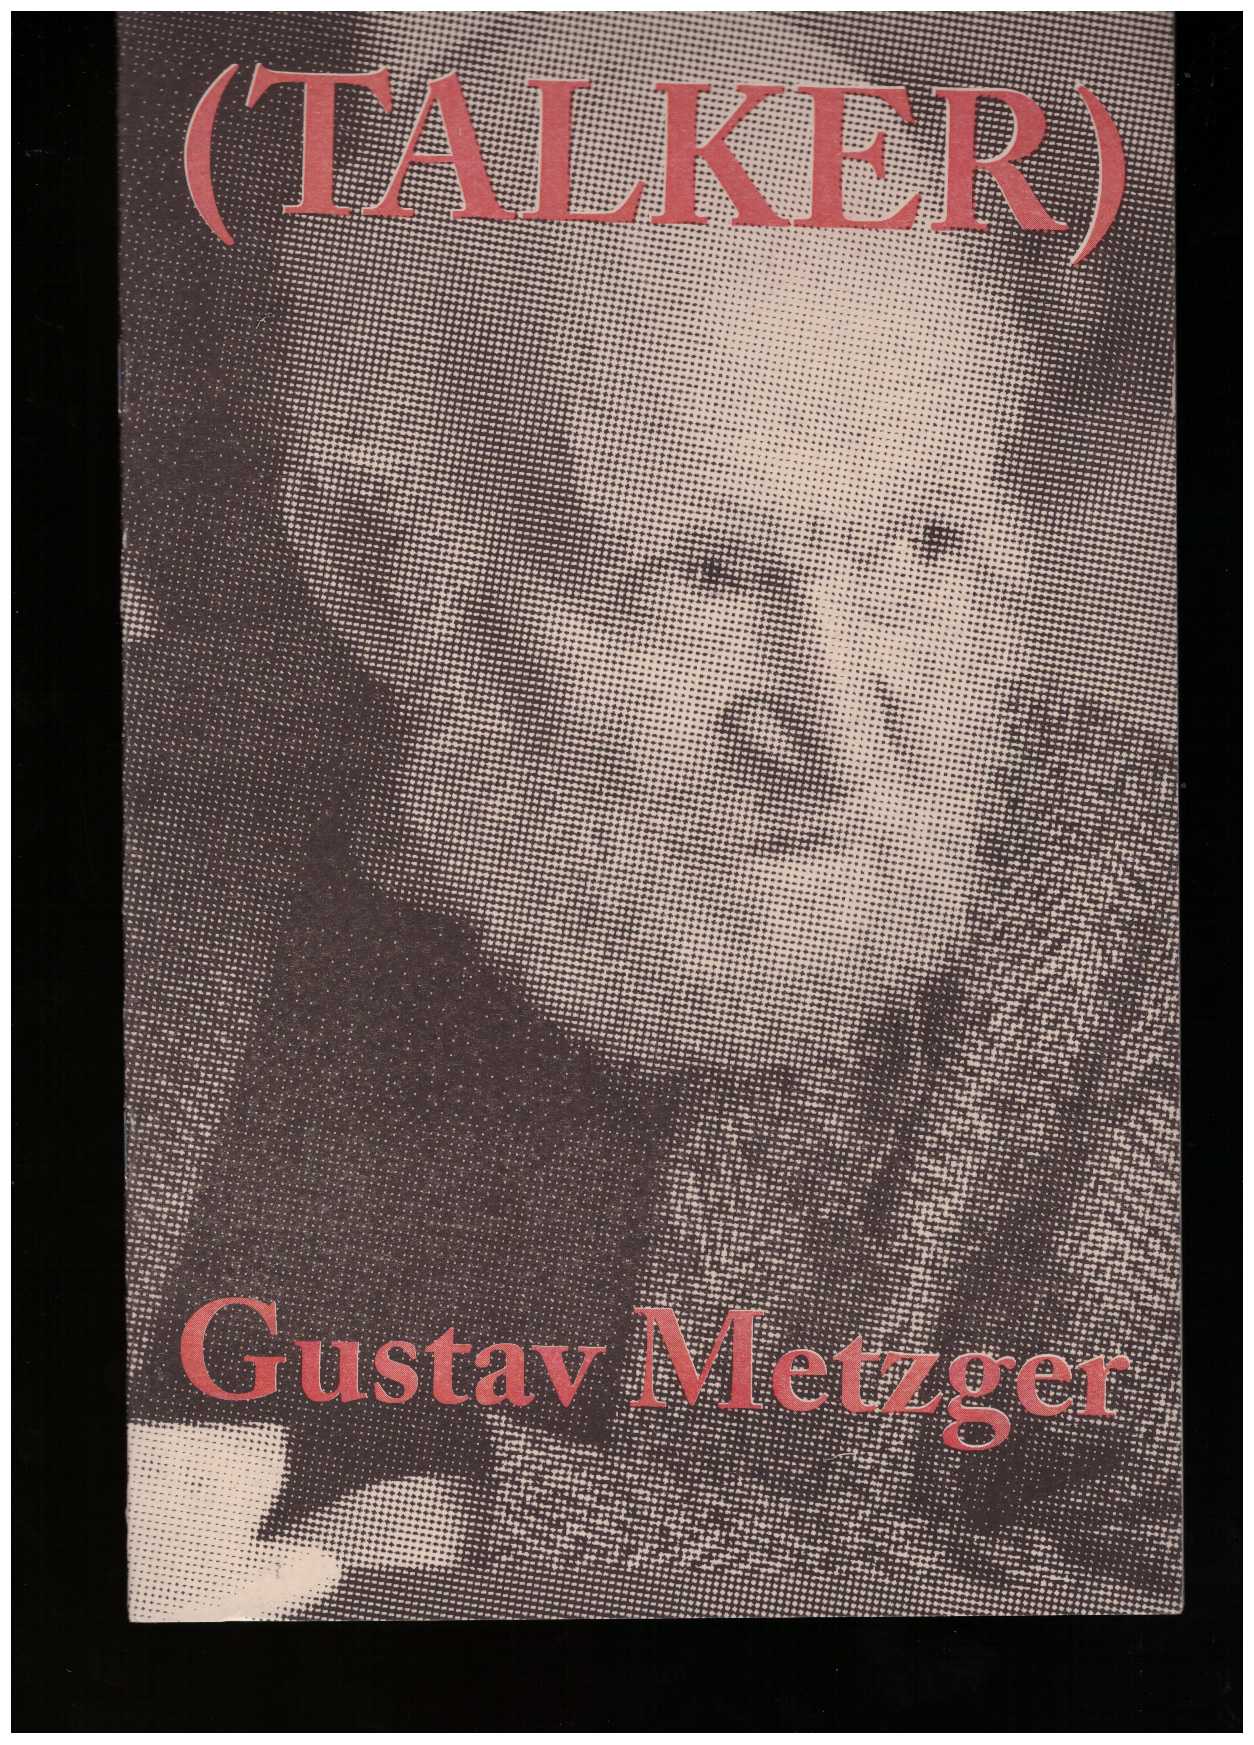 METZGER, Gustav; BAILEY, Giles (ed.) - (Talker): Gustav Metzger